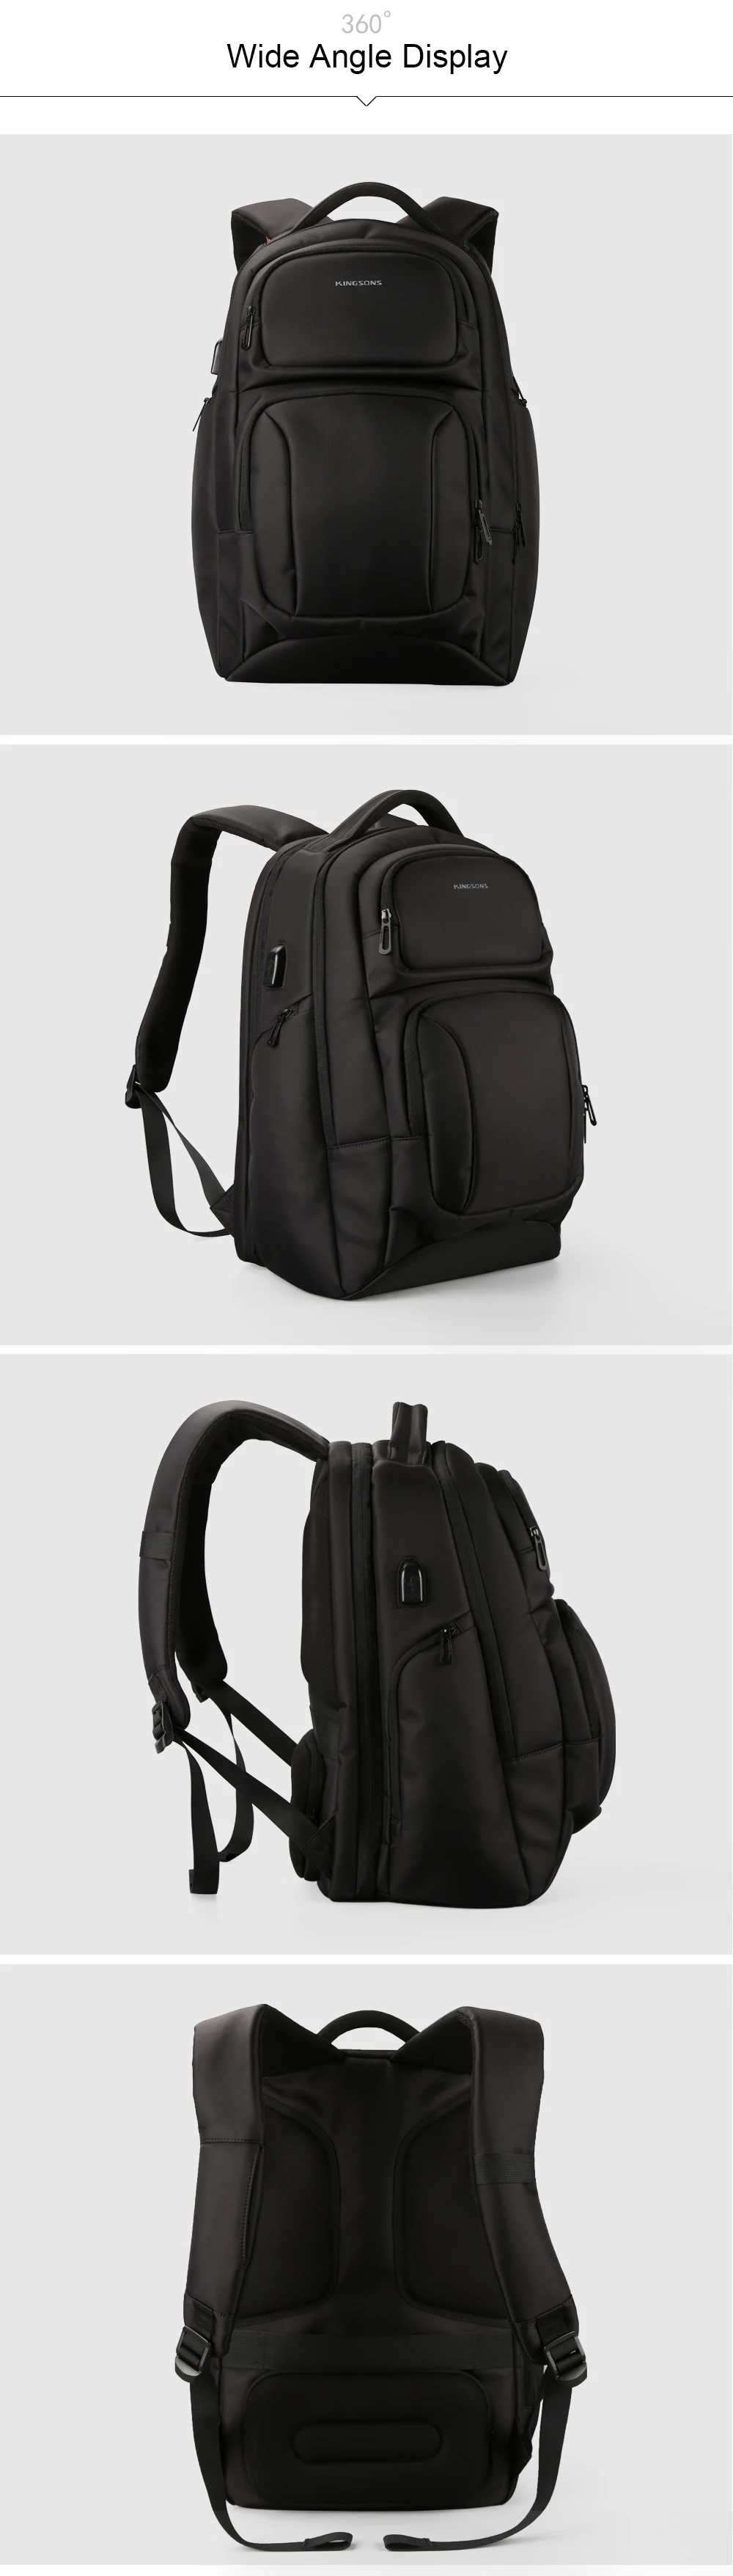 Kingsons мужской рюкзак Противоугонный и USB зарядка Рюкзак для ноутбука 15,6 дюймов школьные сумки для подростков мальчиков